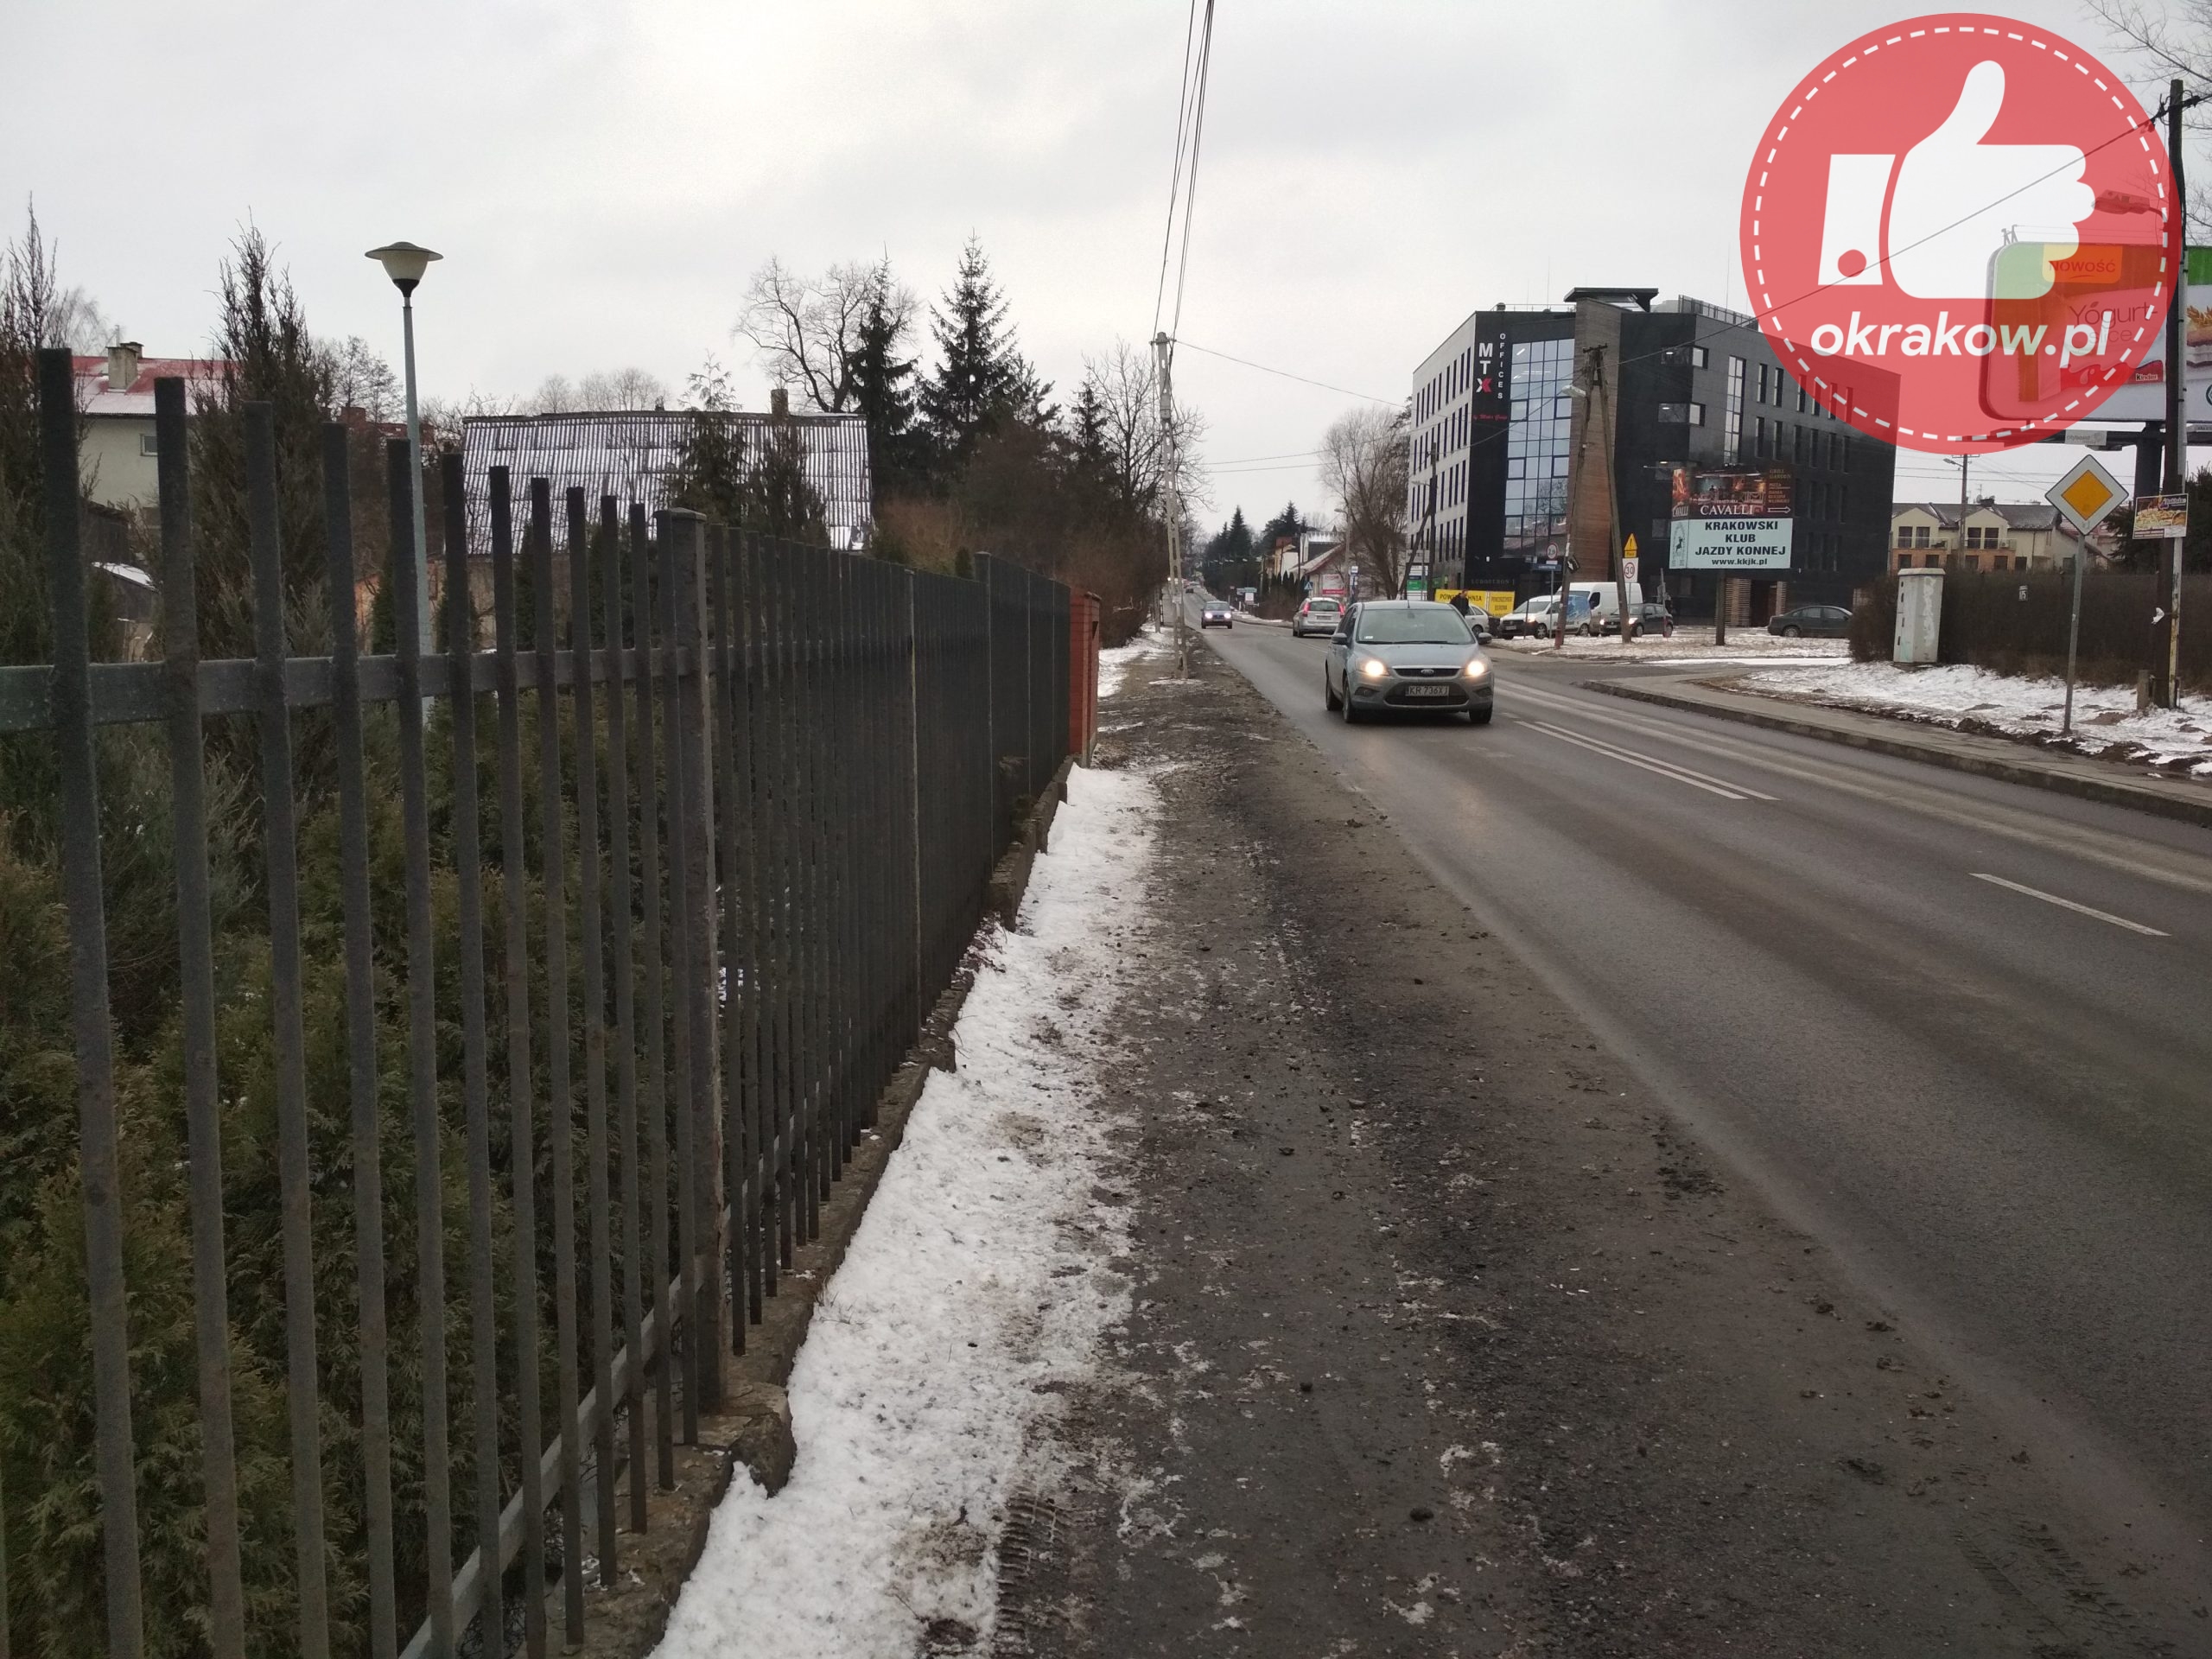 fot. umk 2 scaled - Newralgiczne skrzyżowanie ulic Lubostroń i Kobierzyńskiej z dużymi problemami